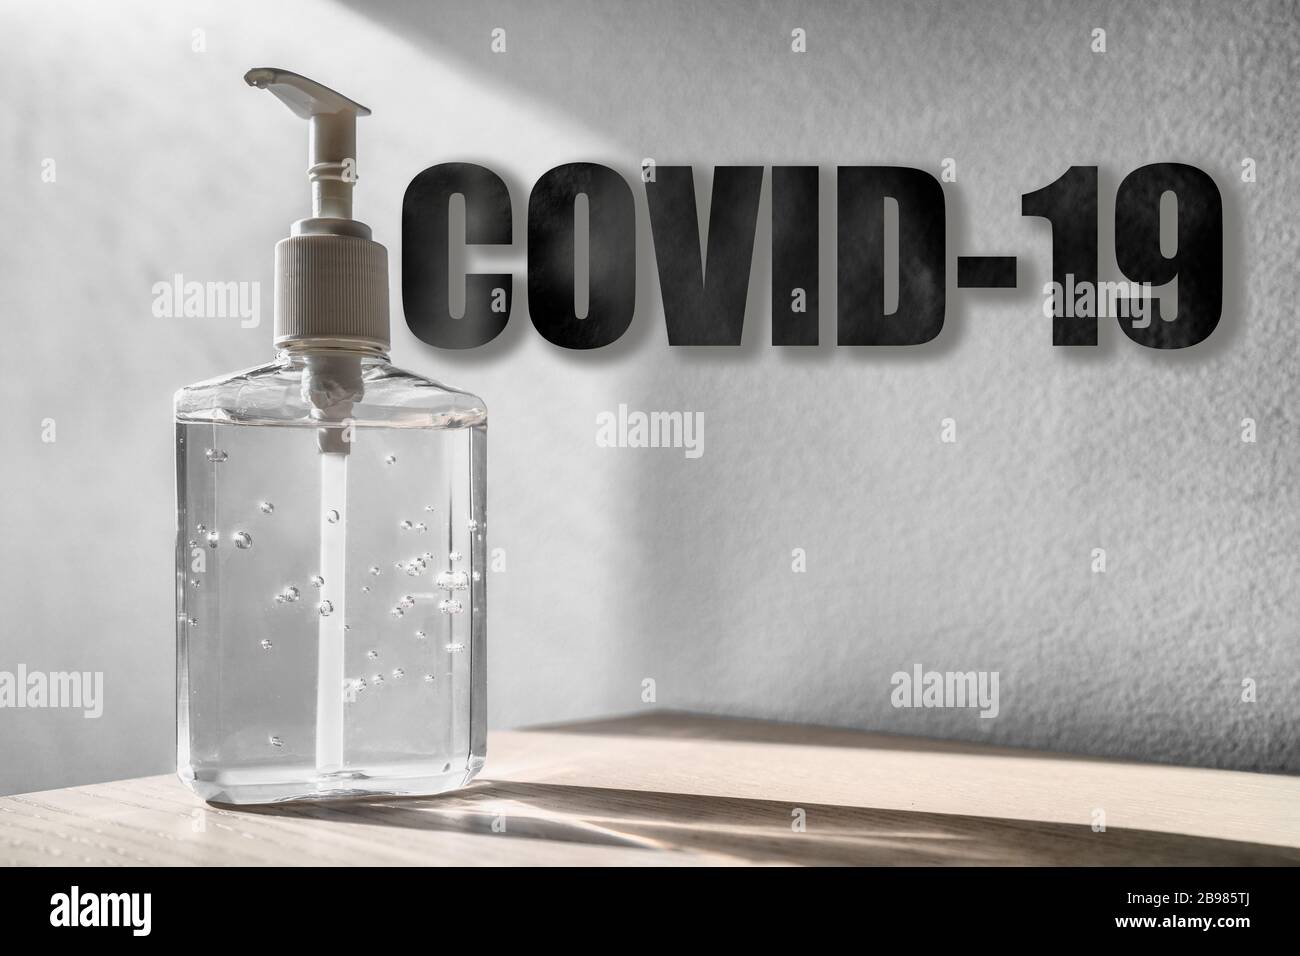 Coronaviru COVID-19 titre de texte sur fond de bouteille de désinfectant pour la main avec texture Banque D'Images